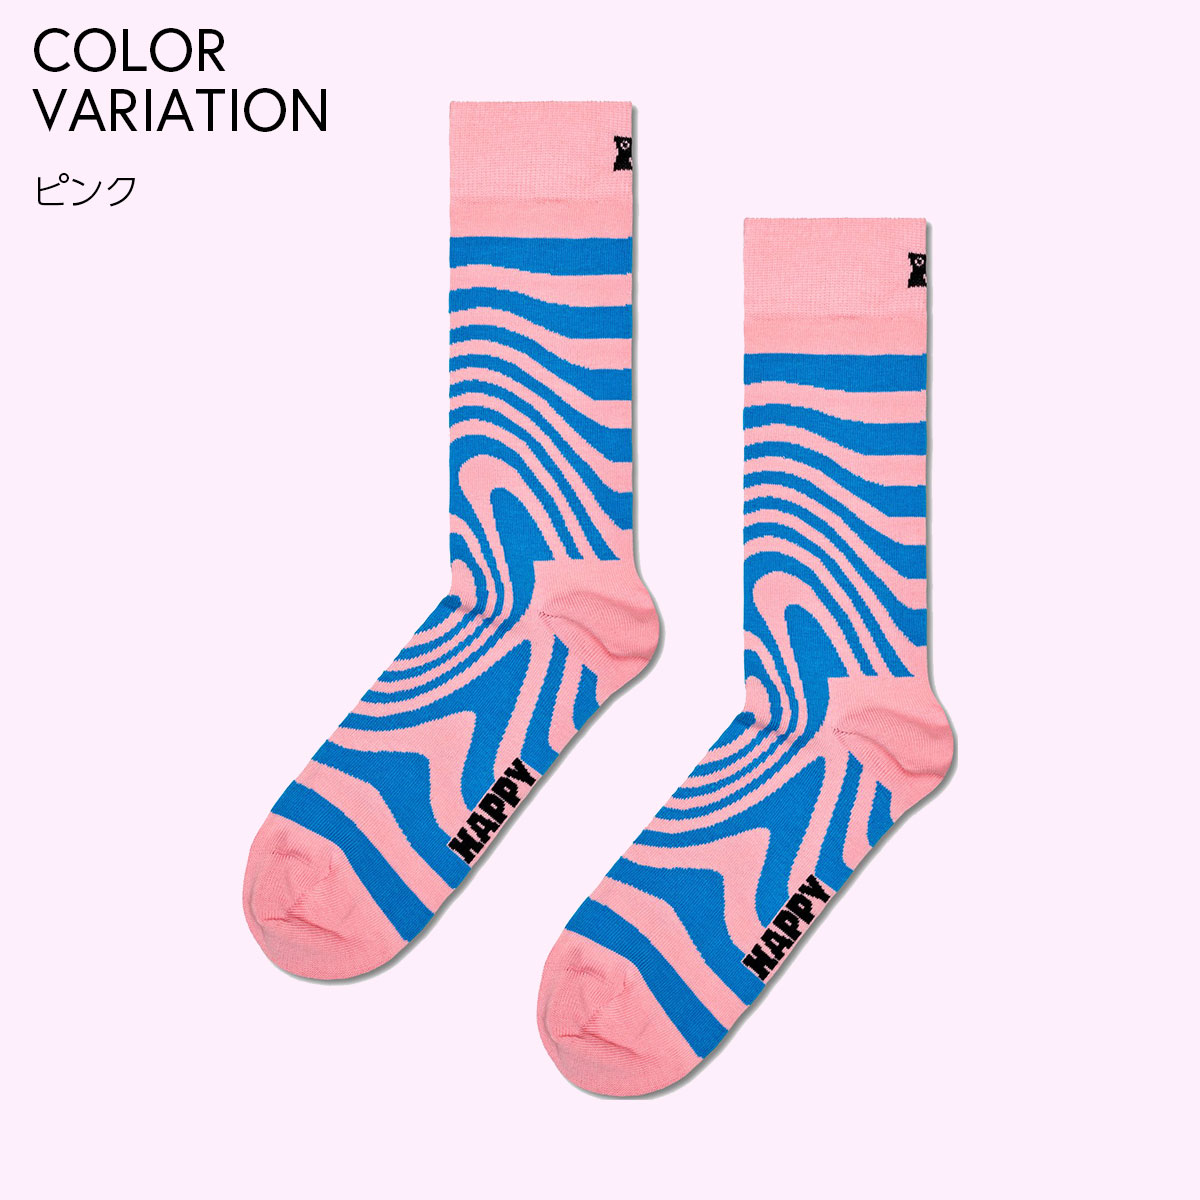 【24SS】Happy Socks ハッピーソックス Dizzy ( ディジー ) ピンク クルー丈 ソックス ユニセックス メンズ ＆ レディス 10240066